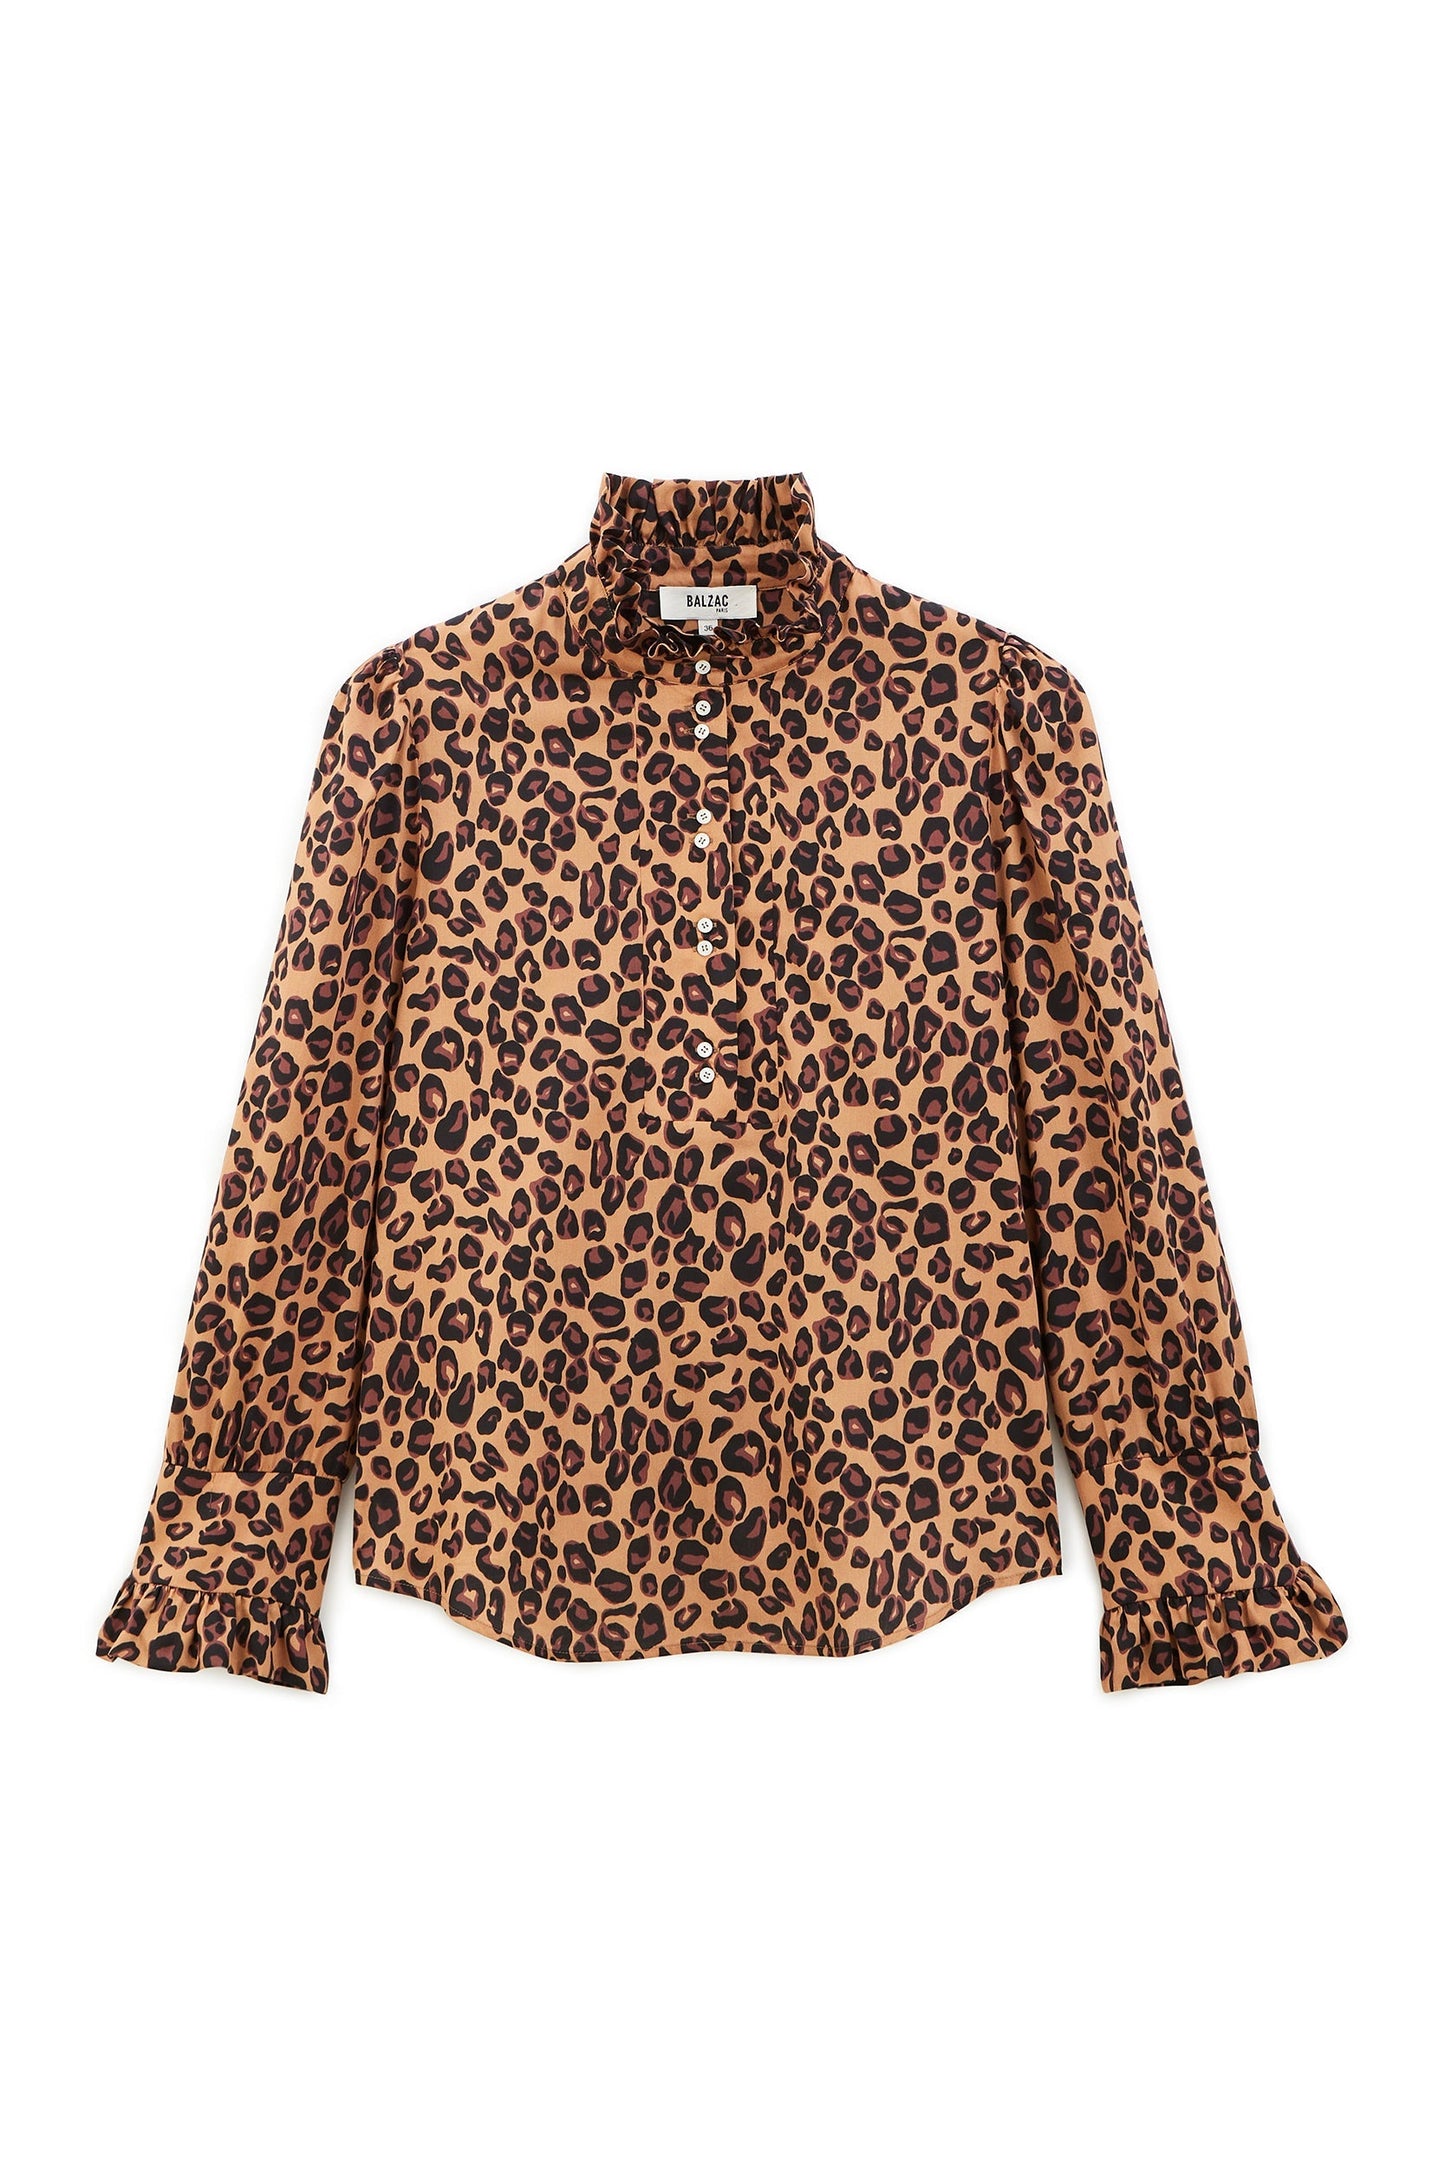 Source leopard blouse